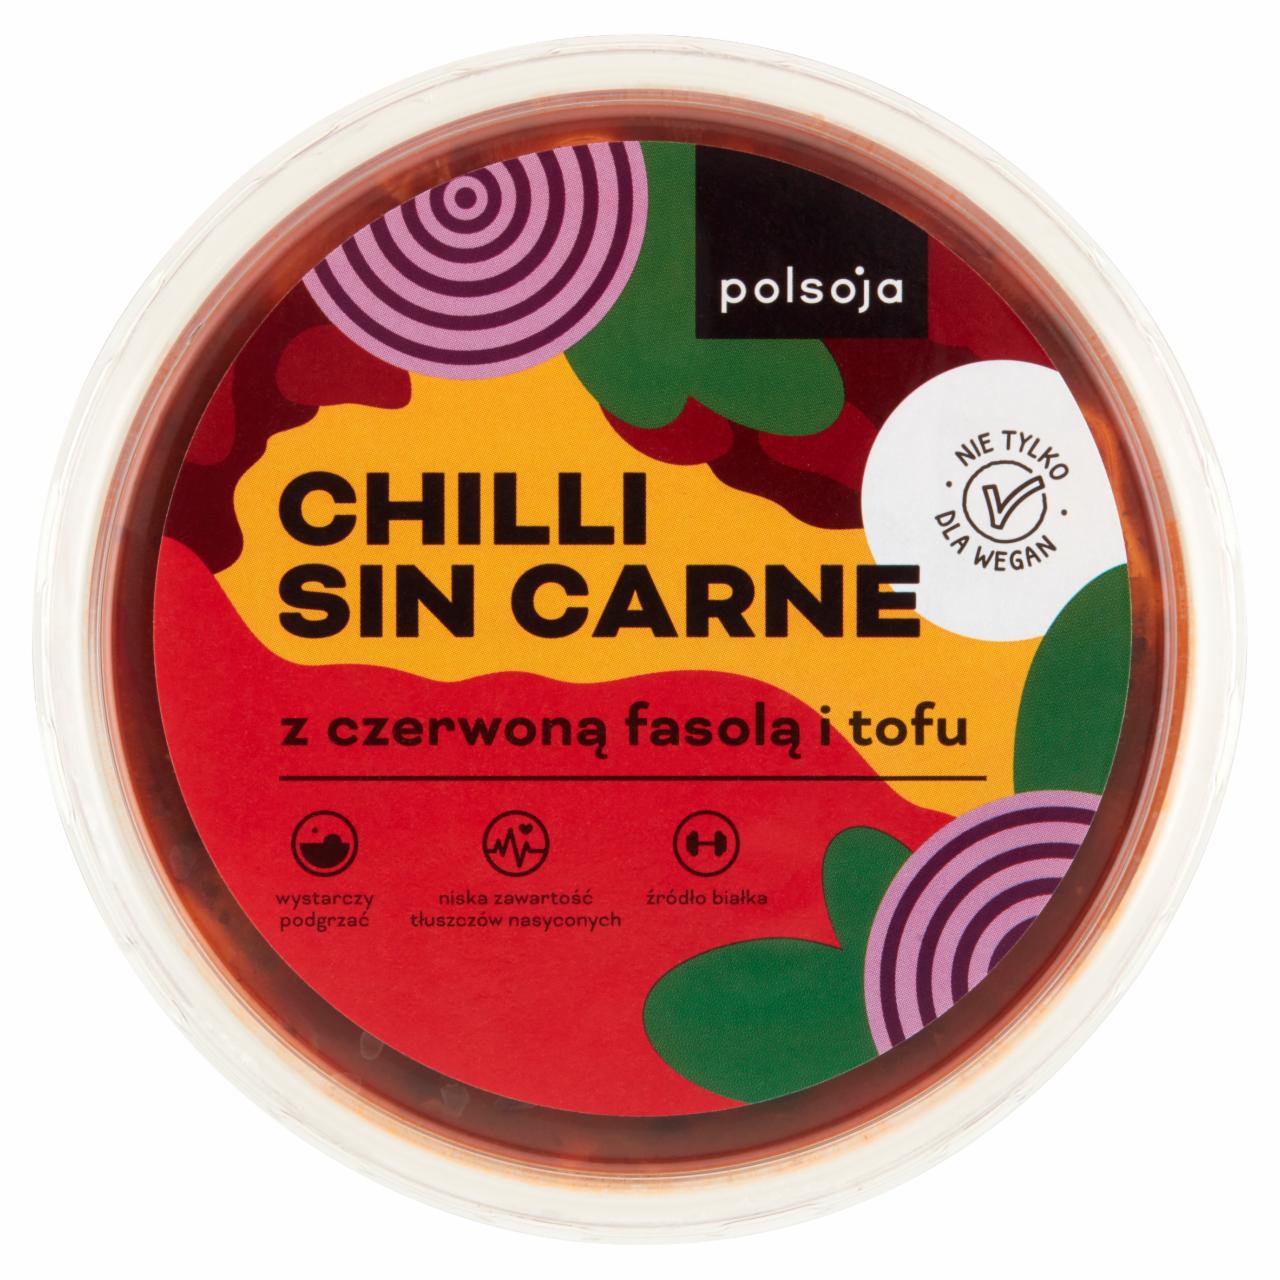 Zdjęcia - Polsoja Chilli Sin Carne z czerwoną fasolą i tofu 180 g